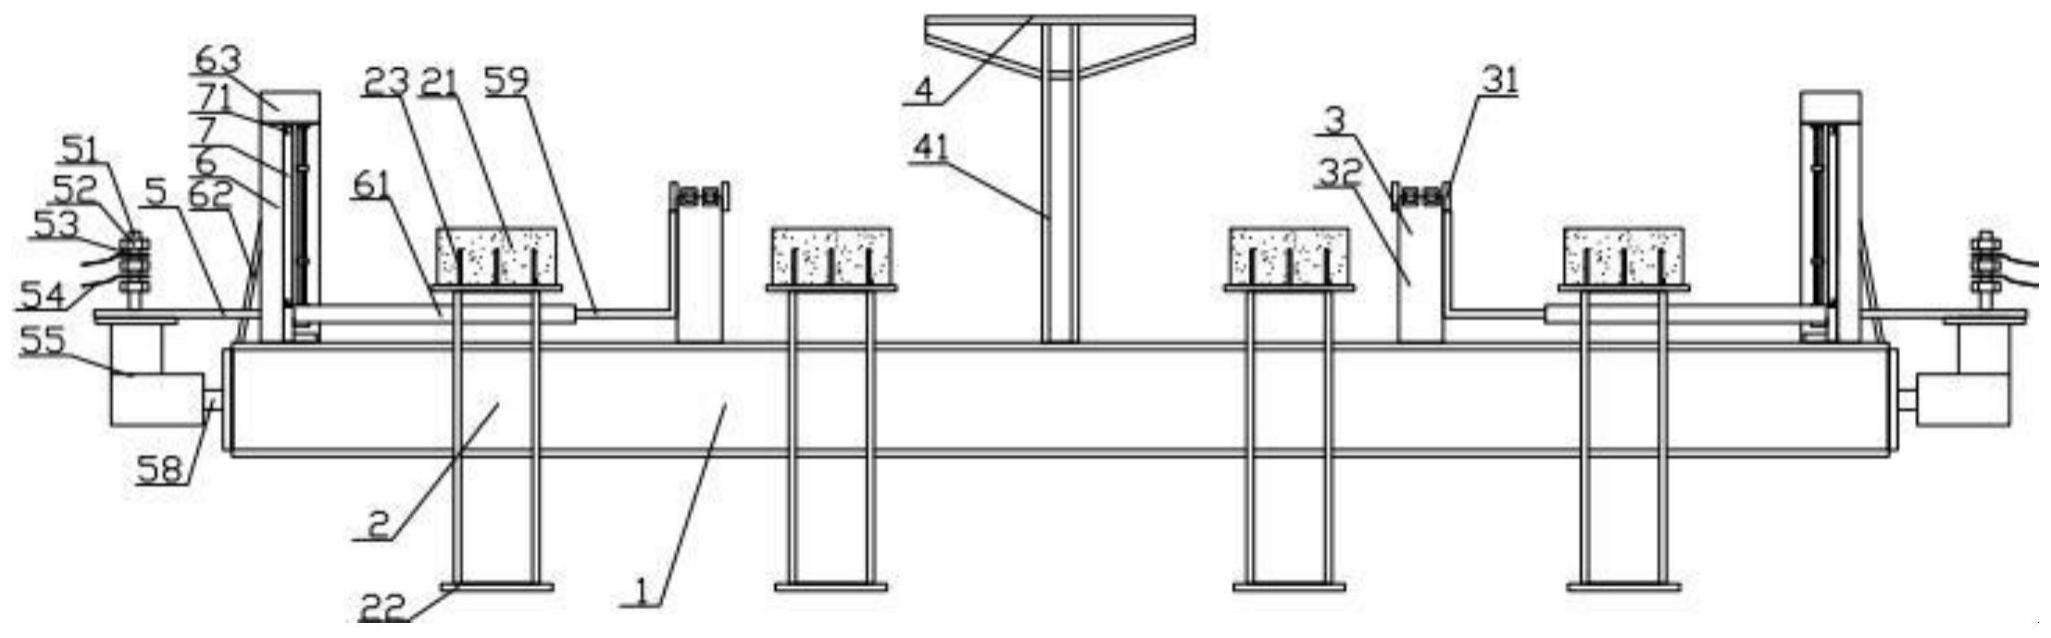 低运量胶轮系统标准梁的制作方法